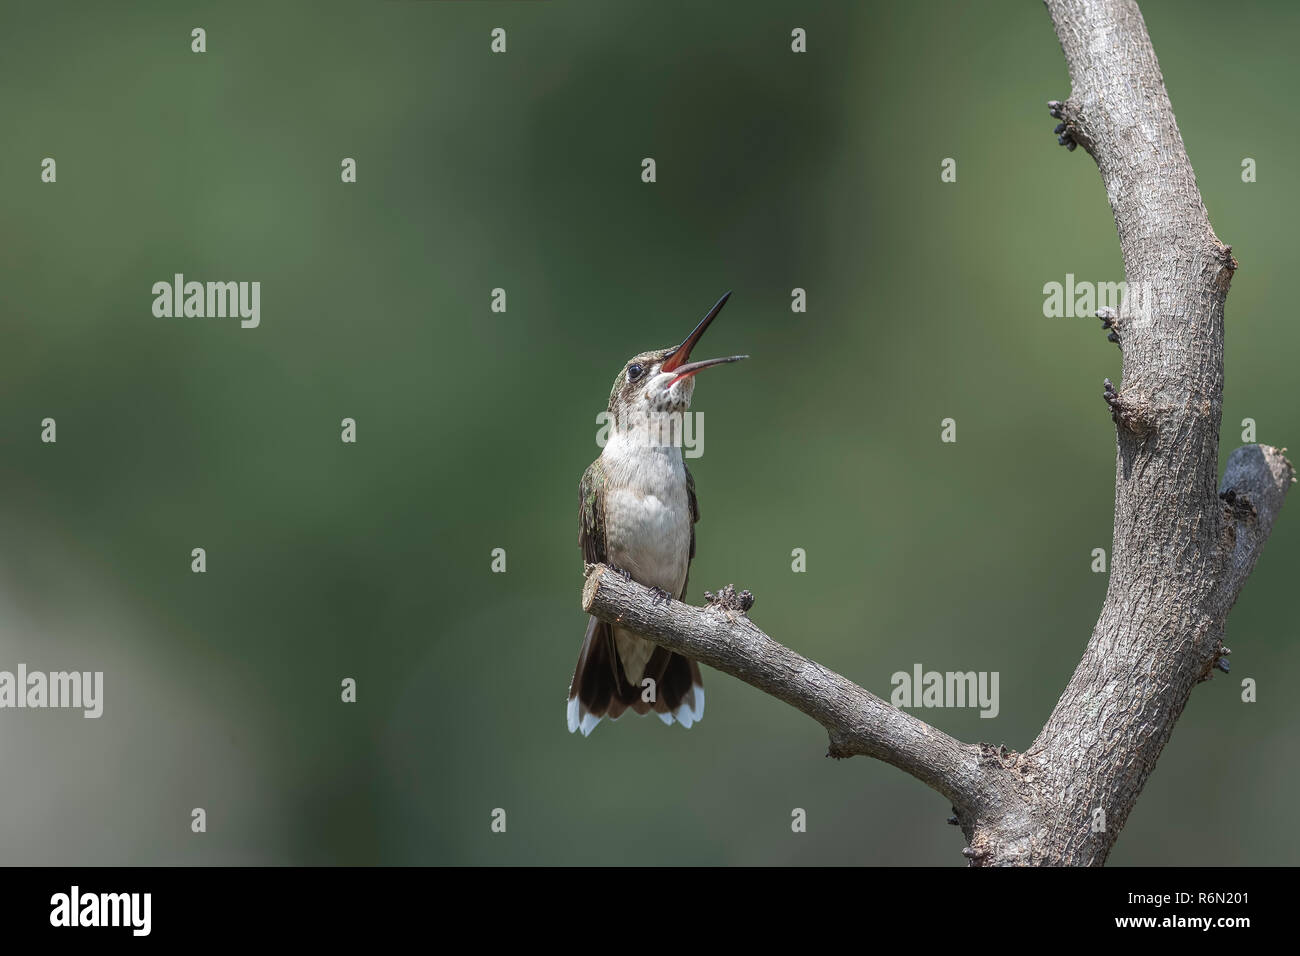 Hummingbird semble être de rire. Il est vraiment prêt à attraper un insecte dans ce large bec ouvert. Banque D'Images